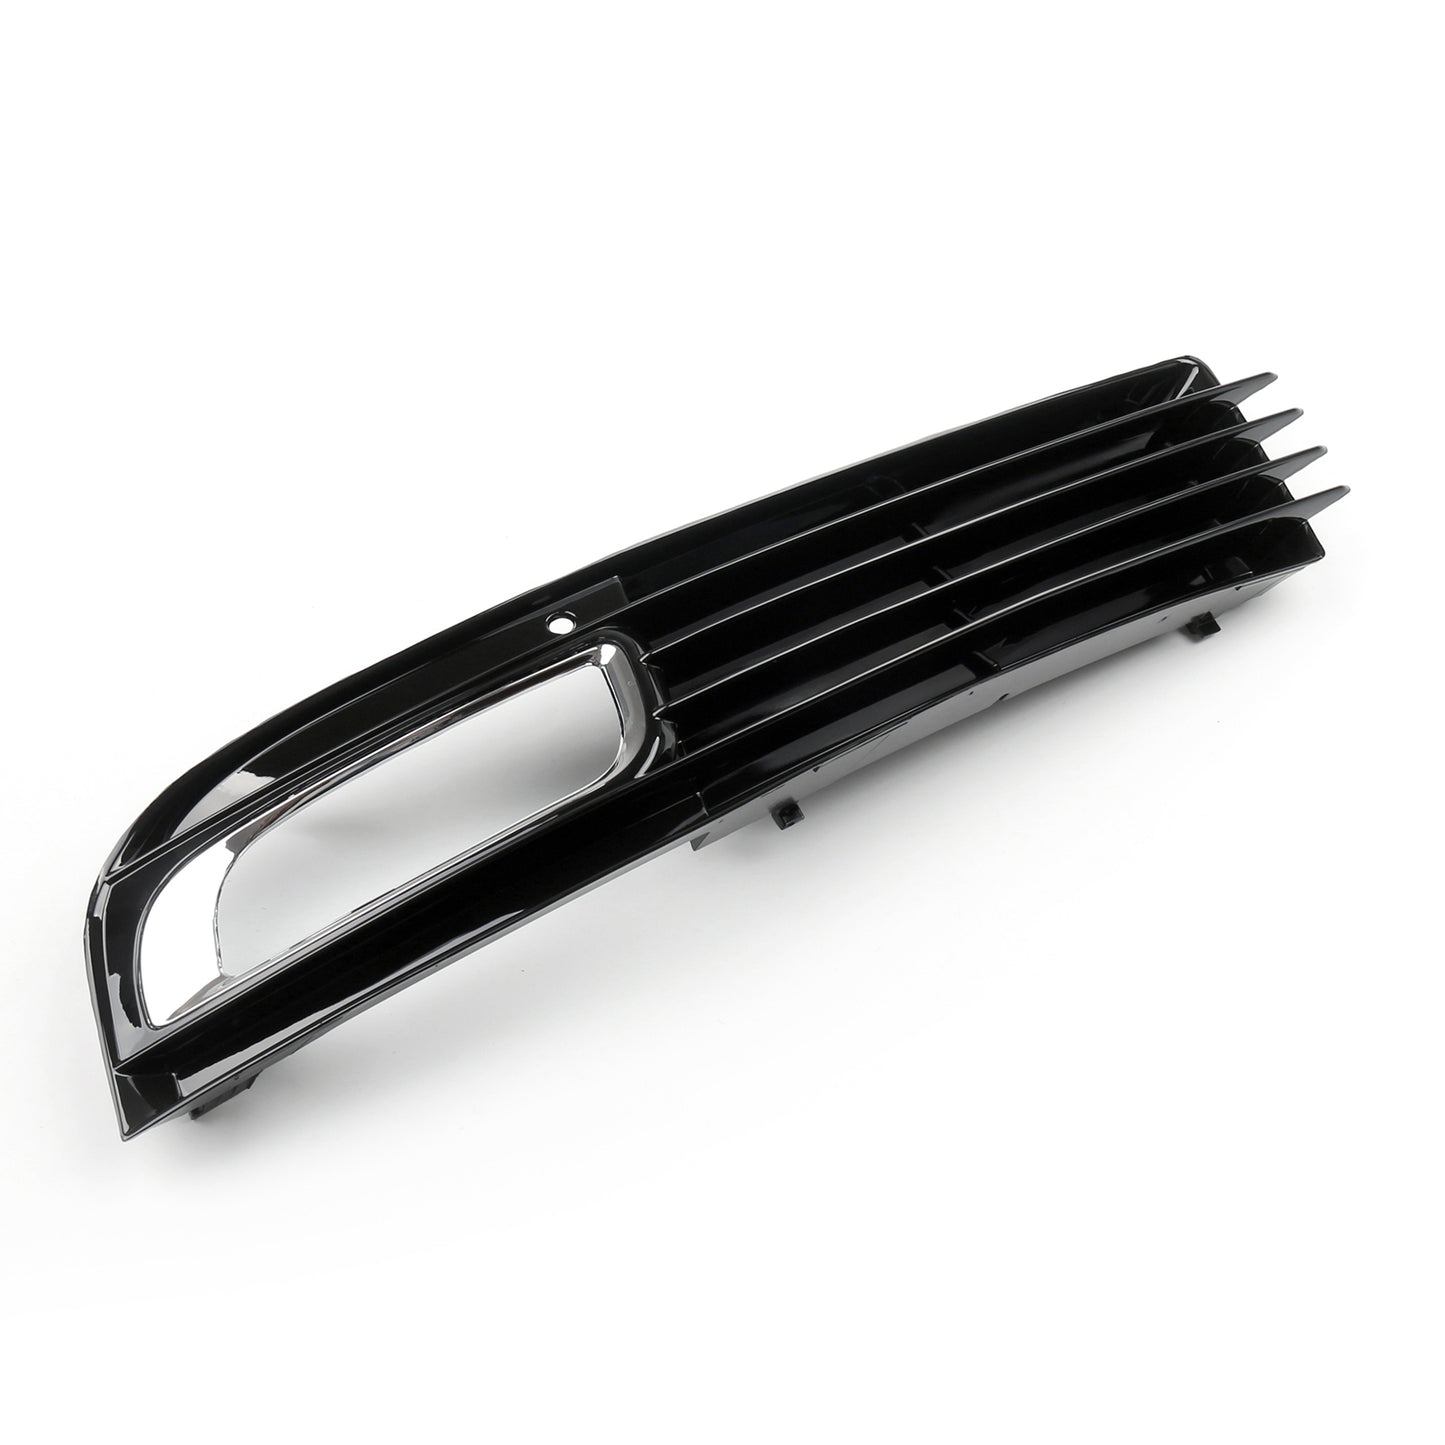 Car Lower Bumper Grille Fog Light Grill w/Chromed For Audi A8 D3 08-10 Left